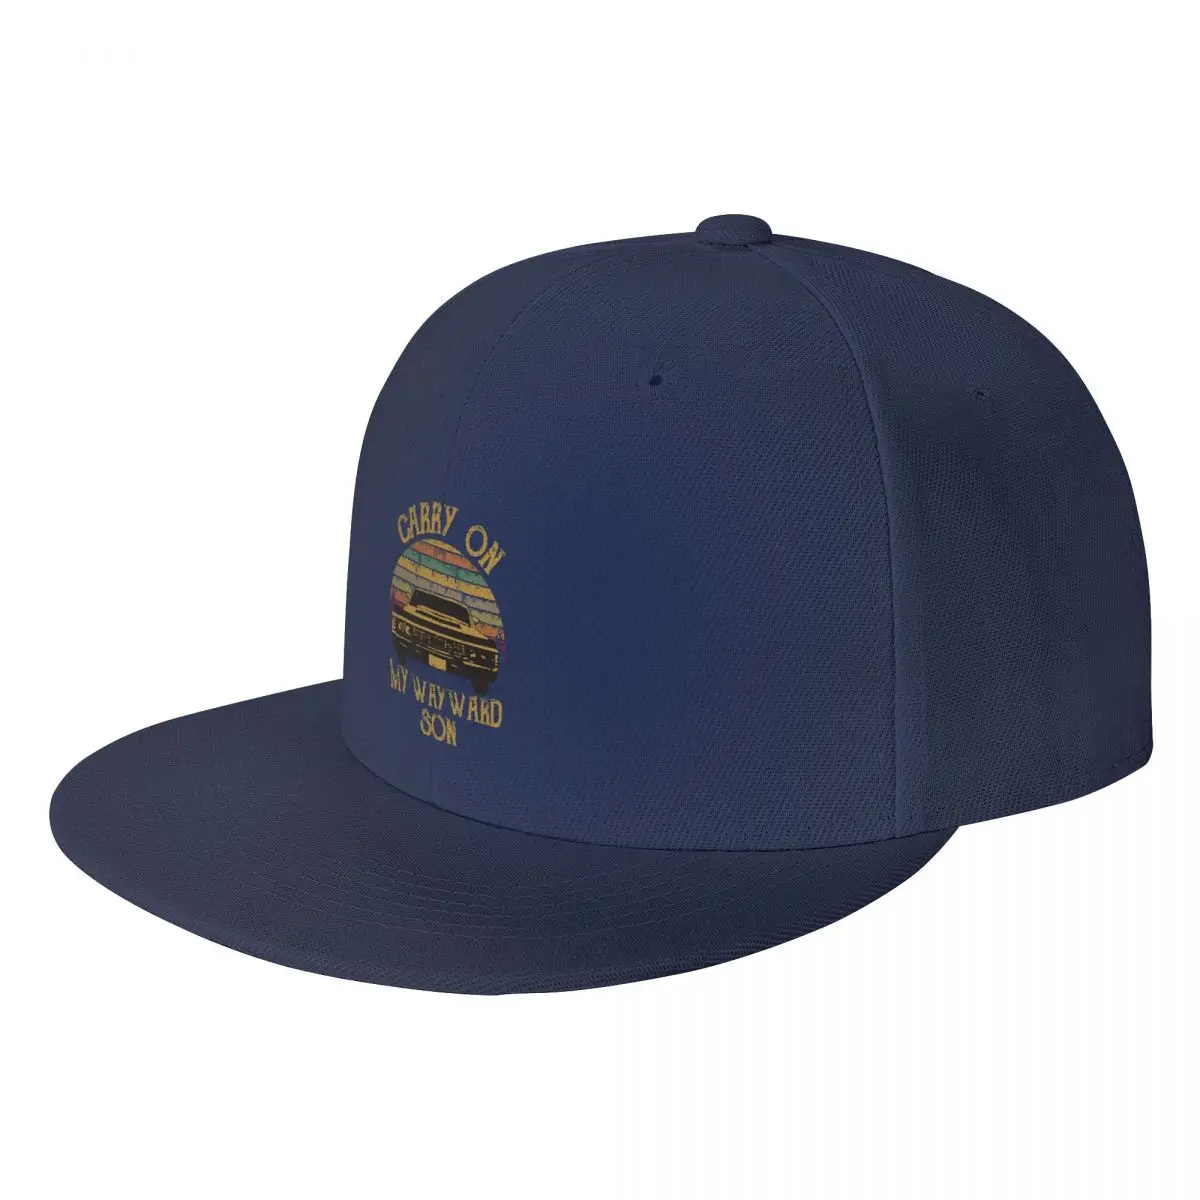 

Сверхнатуральные винтажные бейсбольные кепки, Мужская Снэпбэк Кепка с надписью «Keep On My Wayward Son Dark», бейсболка в стиле хип-хоп, Регулируемая Кепка, уличная одежда